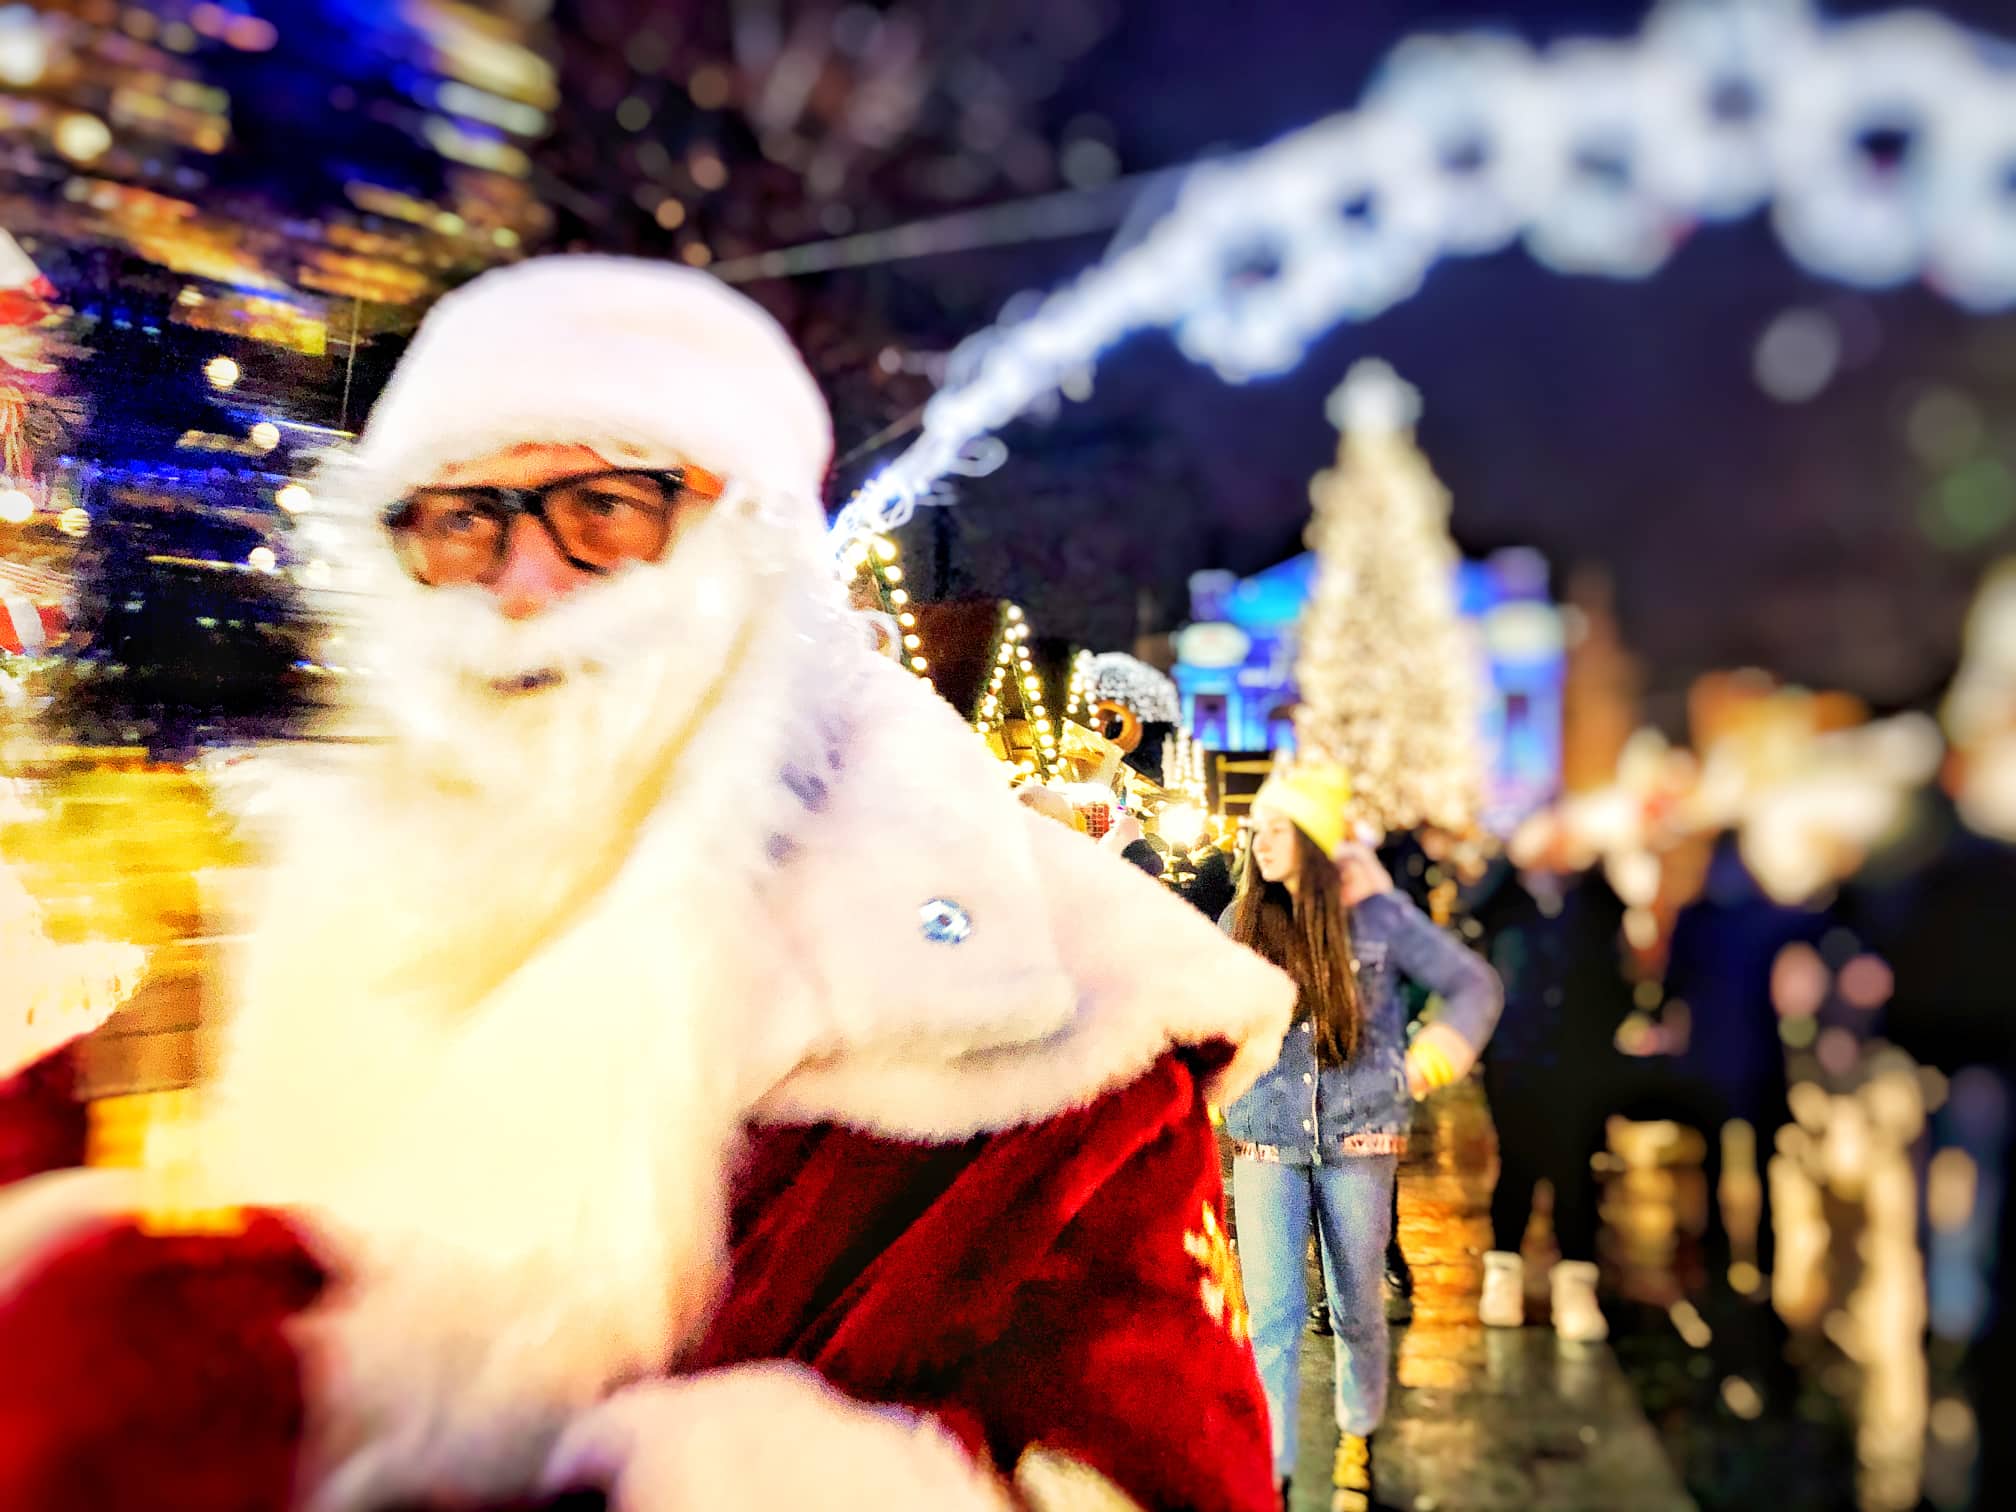 Take a walk at the Lviv Christmas Fair| Photos ~~